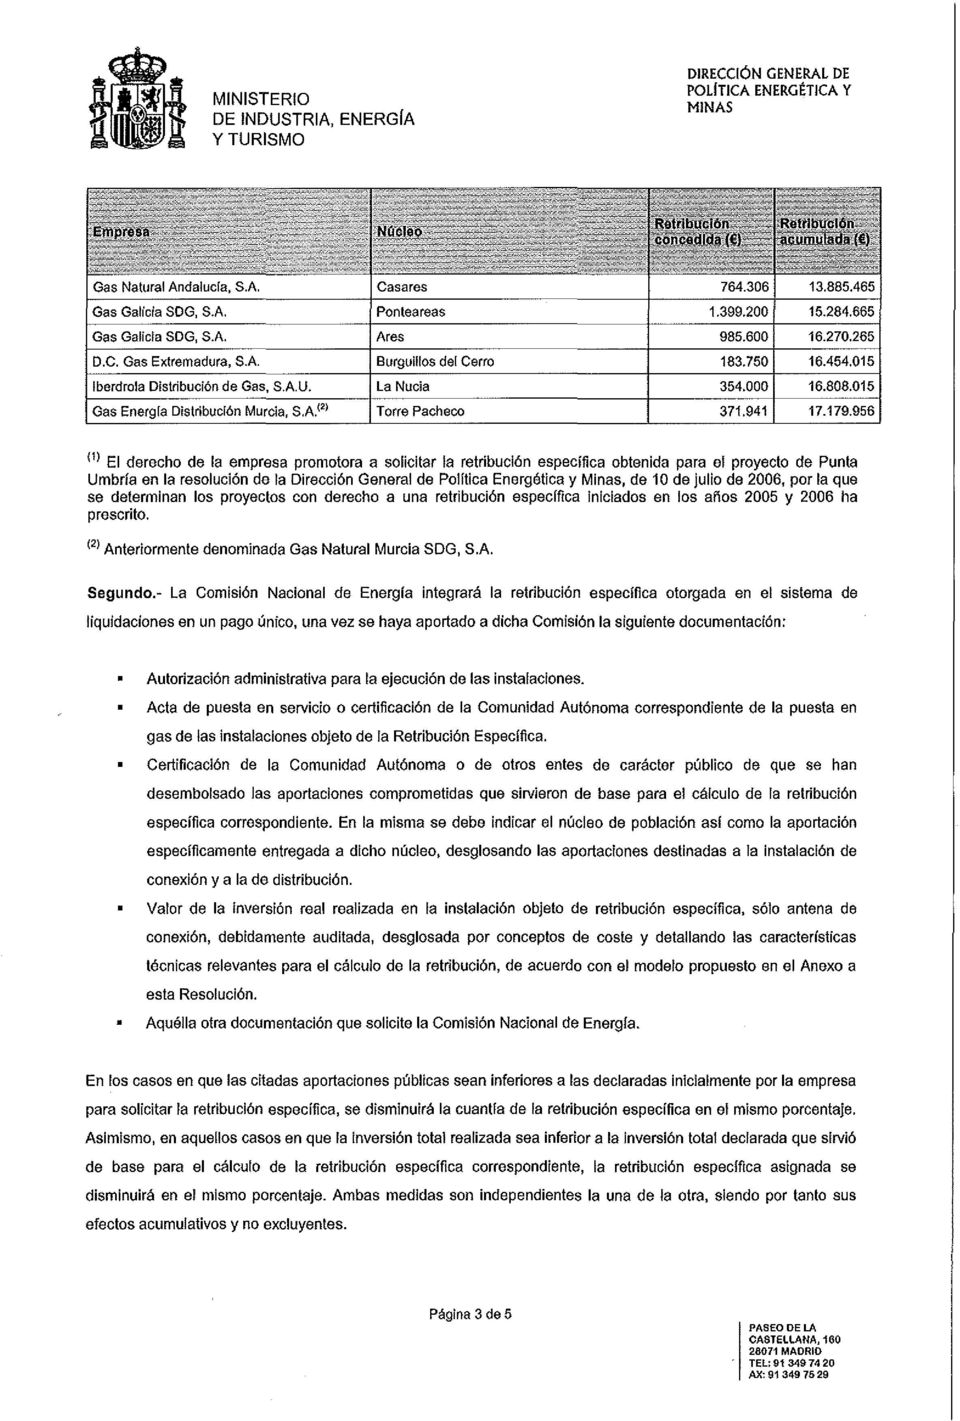 2006 ha prescrito. (2) Anteriormente denominada Gas Natural Murcia SDG, S.A. Segundo.